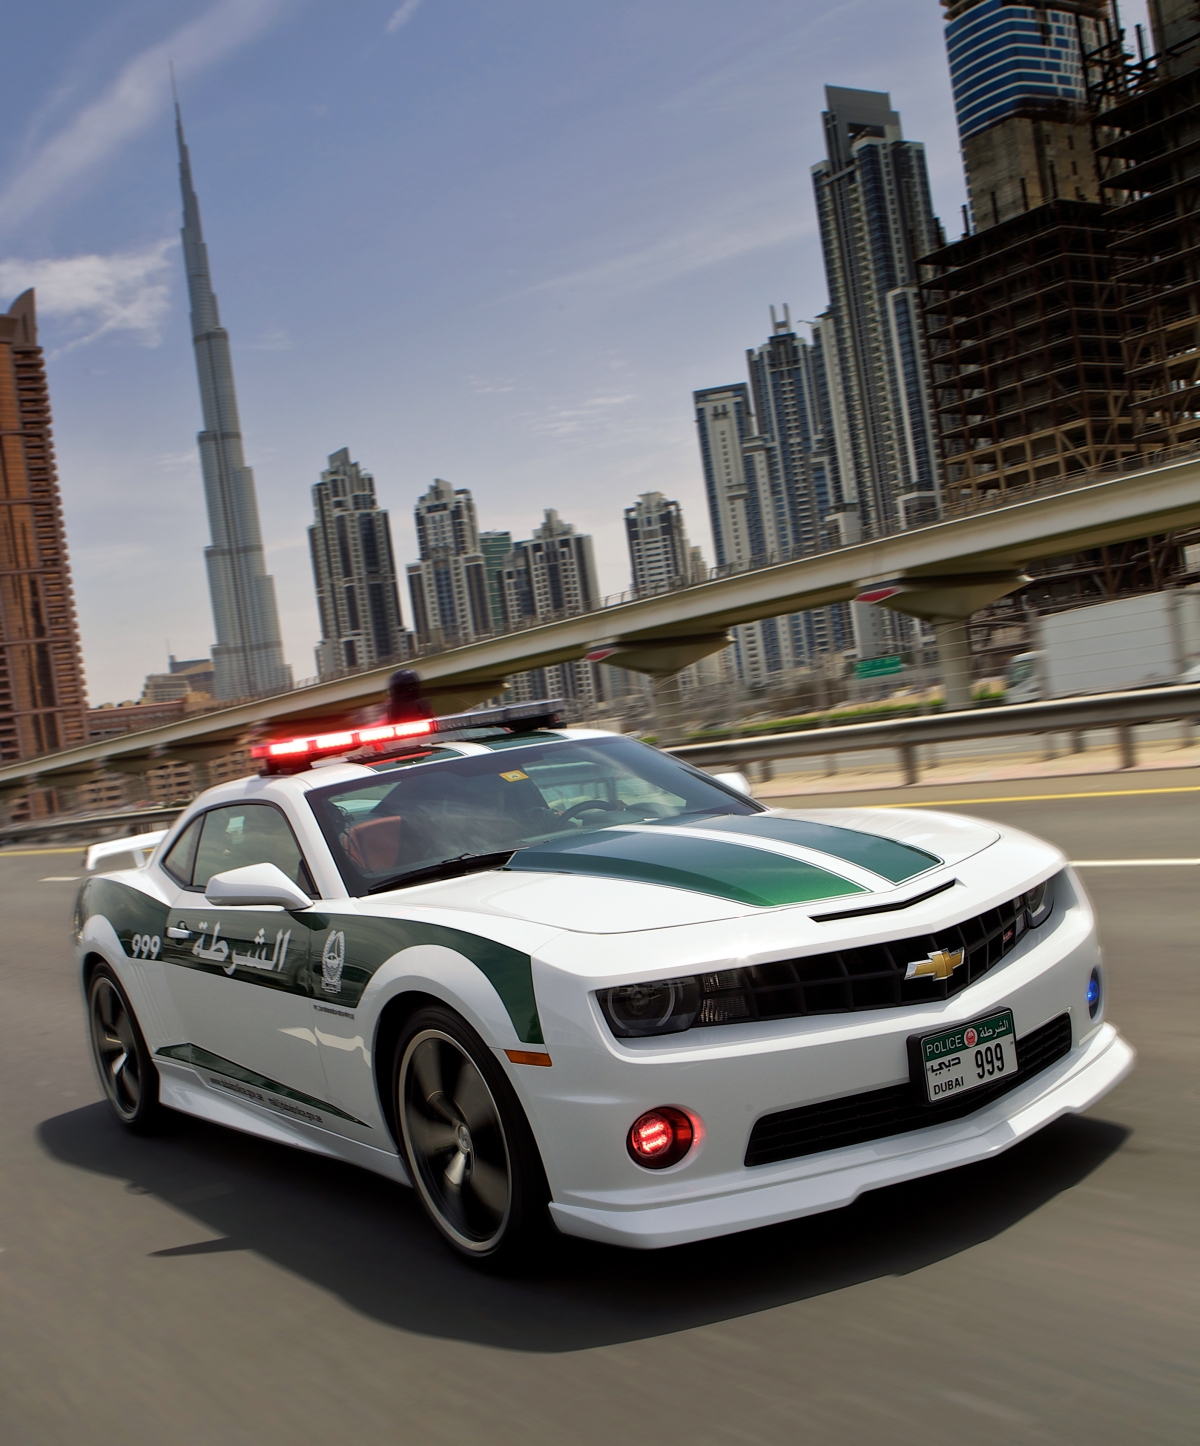 Chevrolet-Camaro-SS-dla-policji-w-Dubaju-2